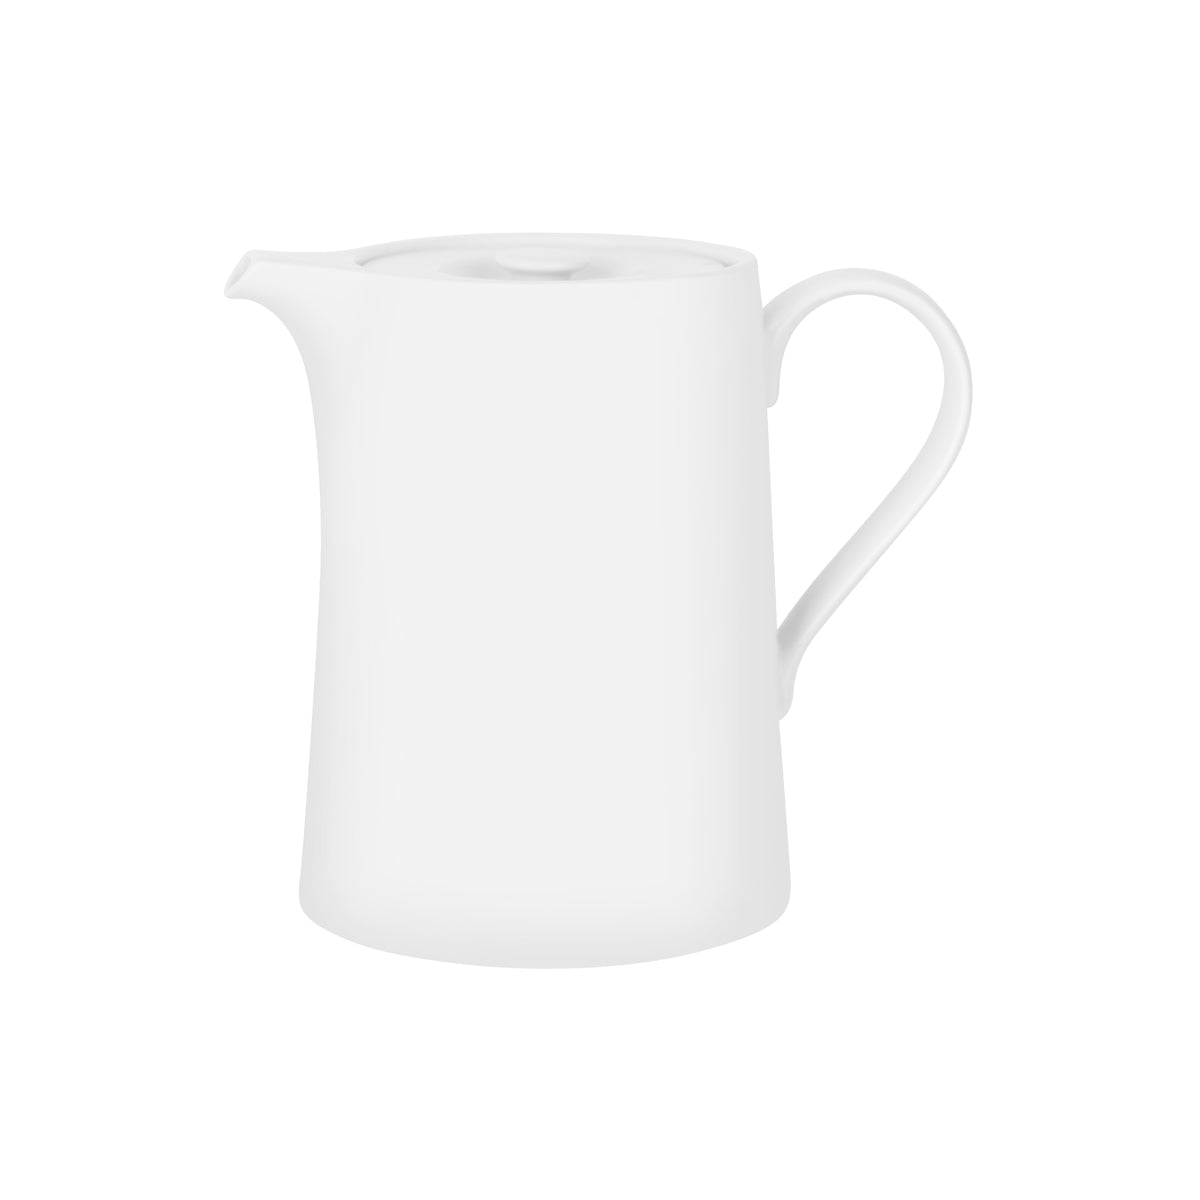 94908 Royal Porcelain White Album Coffee Pot with Lid 1700ml Tomkin Australia Hospitality Supplies